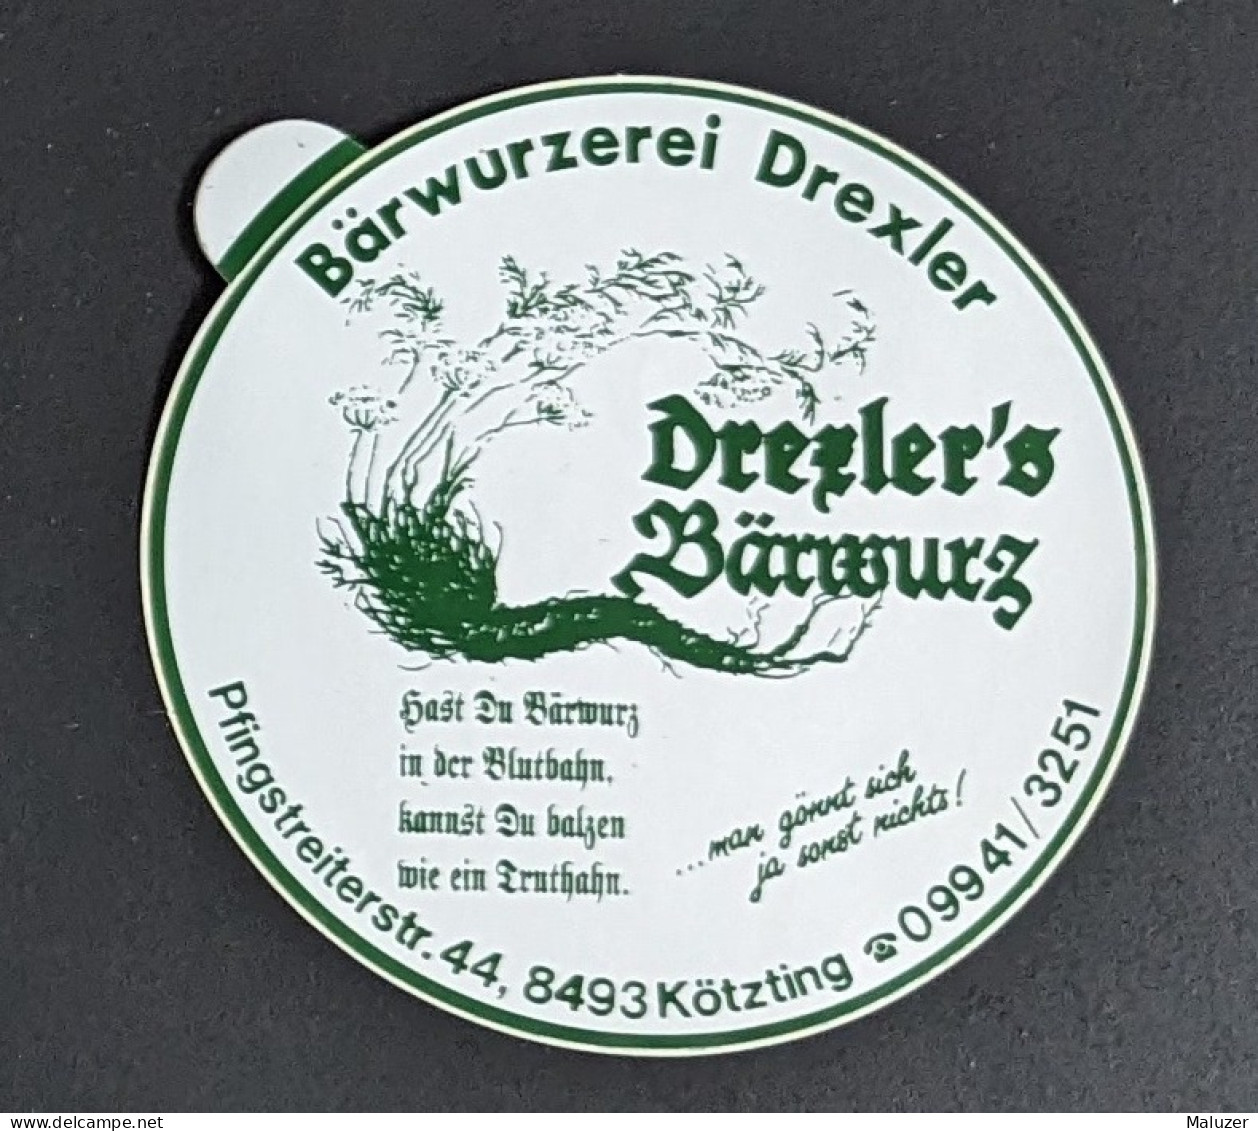 AUTOCOLLANT BARWURZEREI DEXLER - BARWURZ - KÖTZTING - ALLEMAGNE DEUTSCHLAND GERMANY - BAR CAFÉ - Stickers